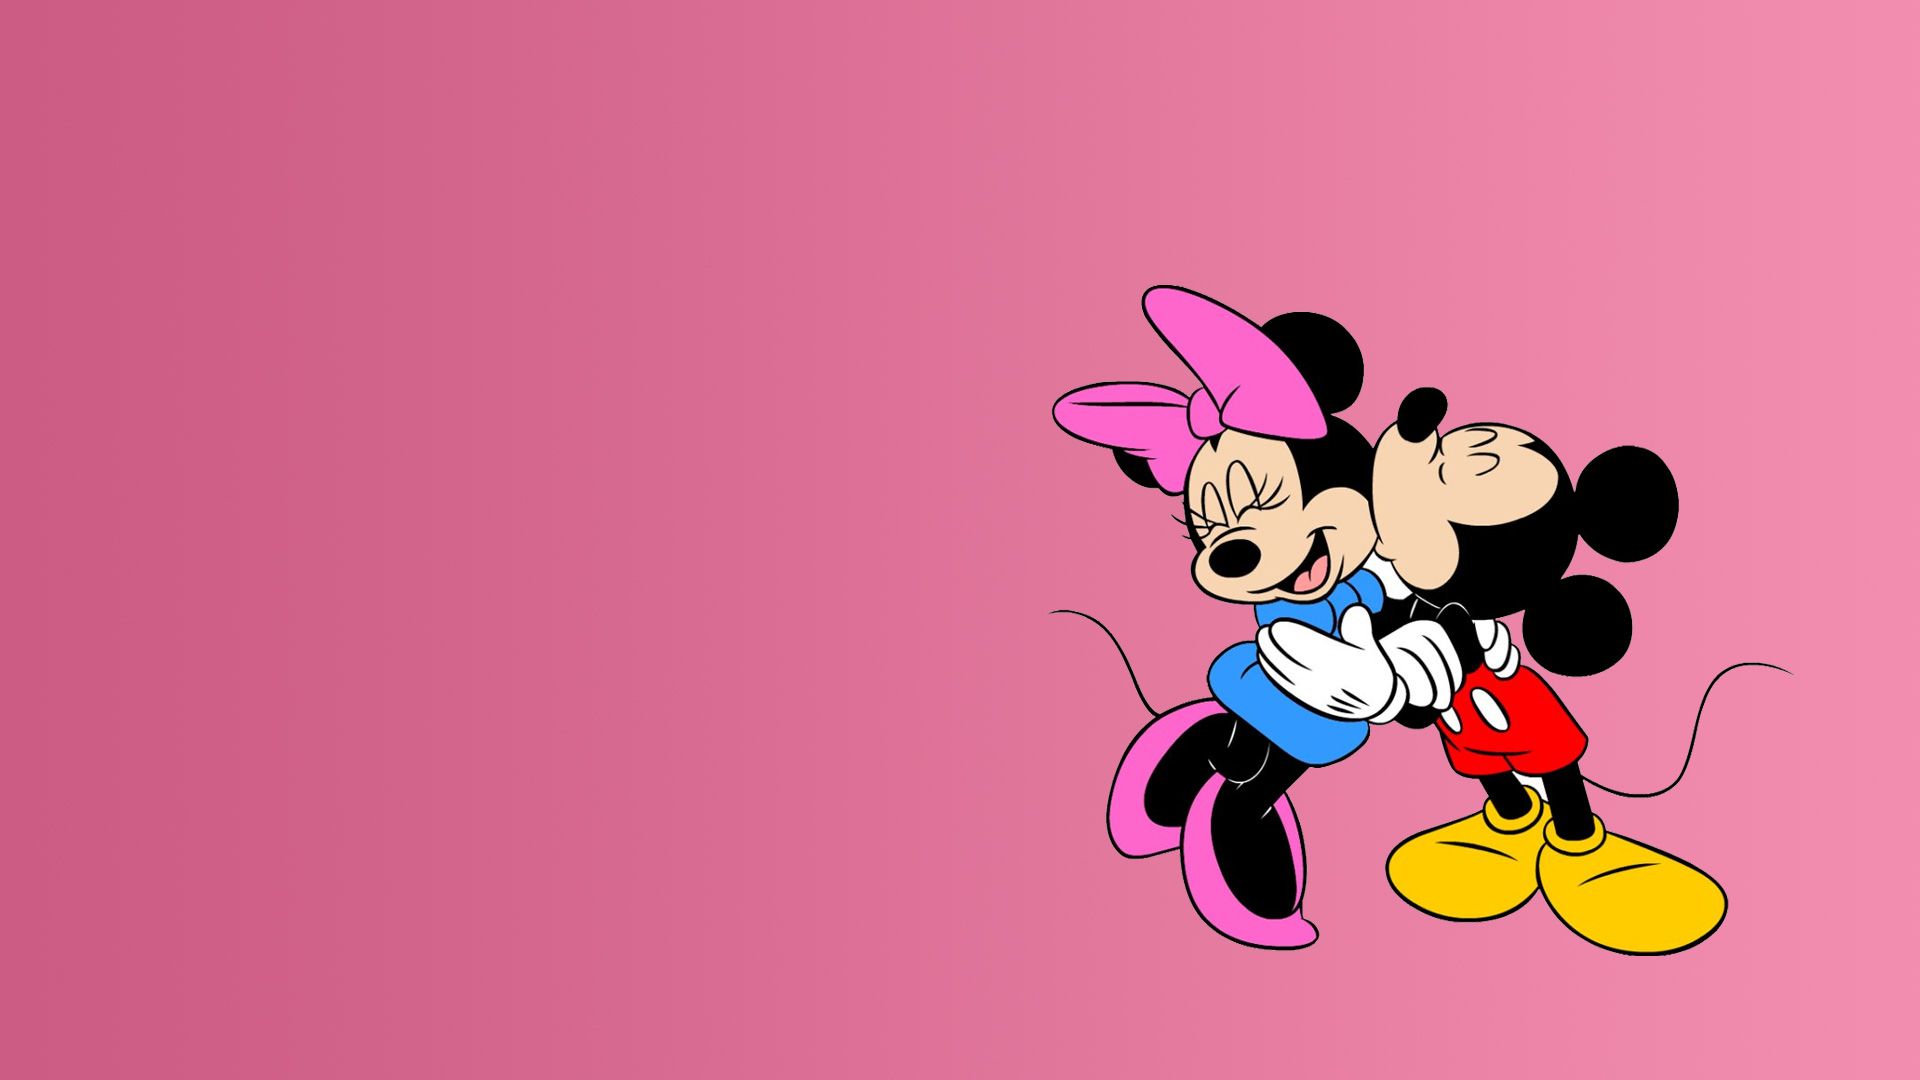 迪士尼的动画明星米老鼠高清桌面壁纸,每个人童年的美好回忆